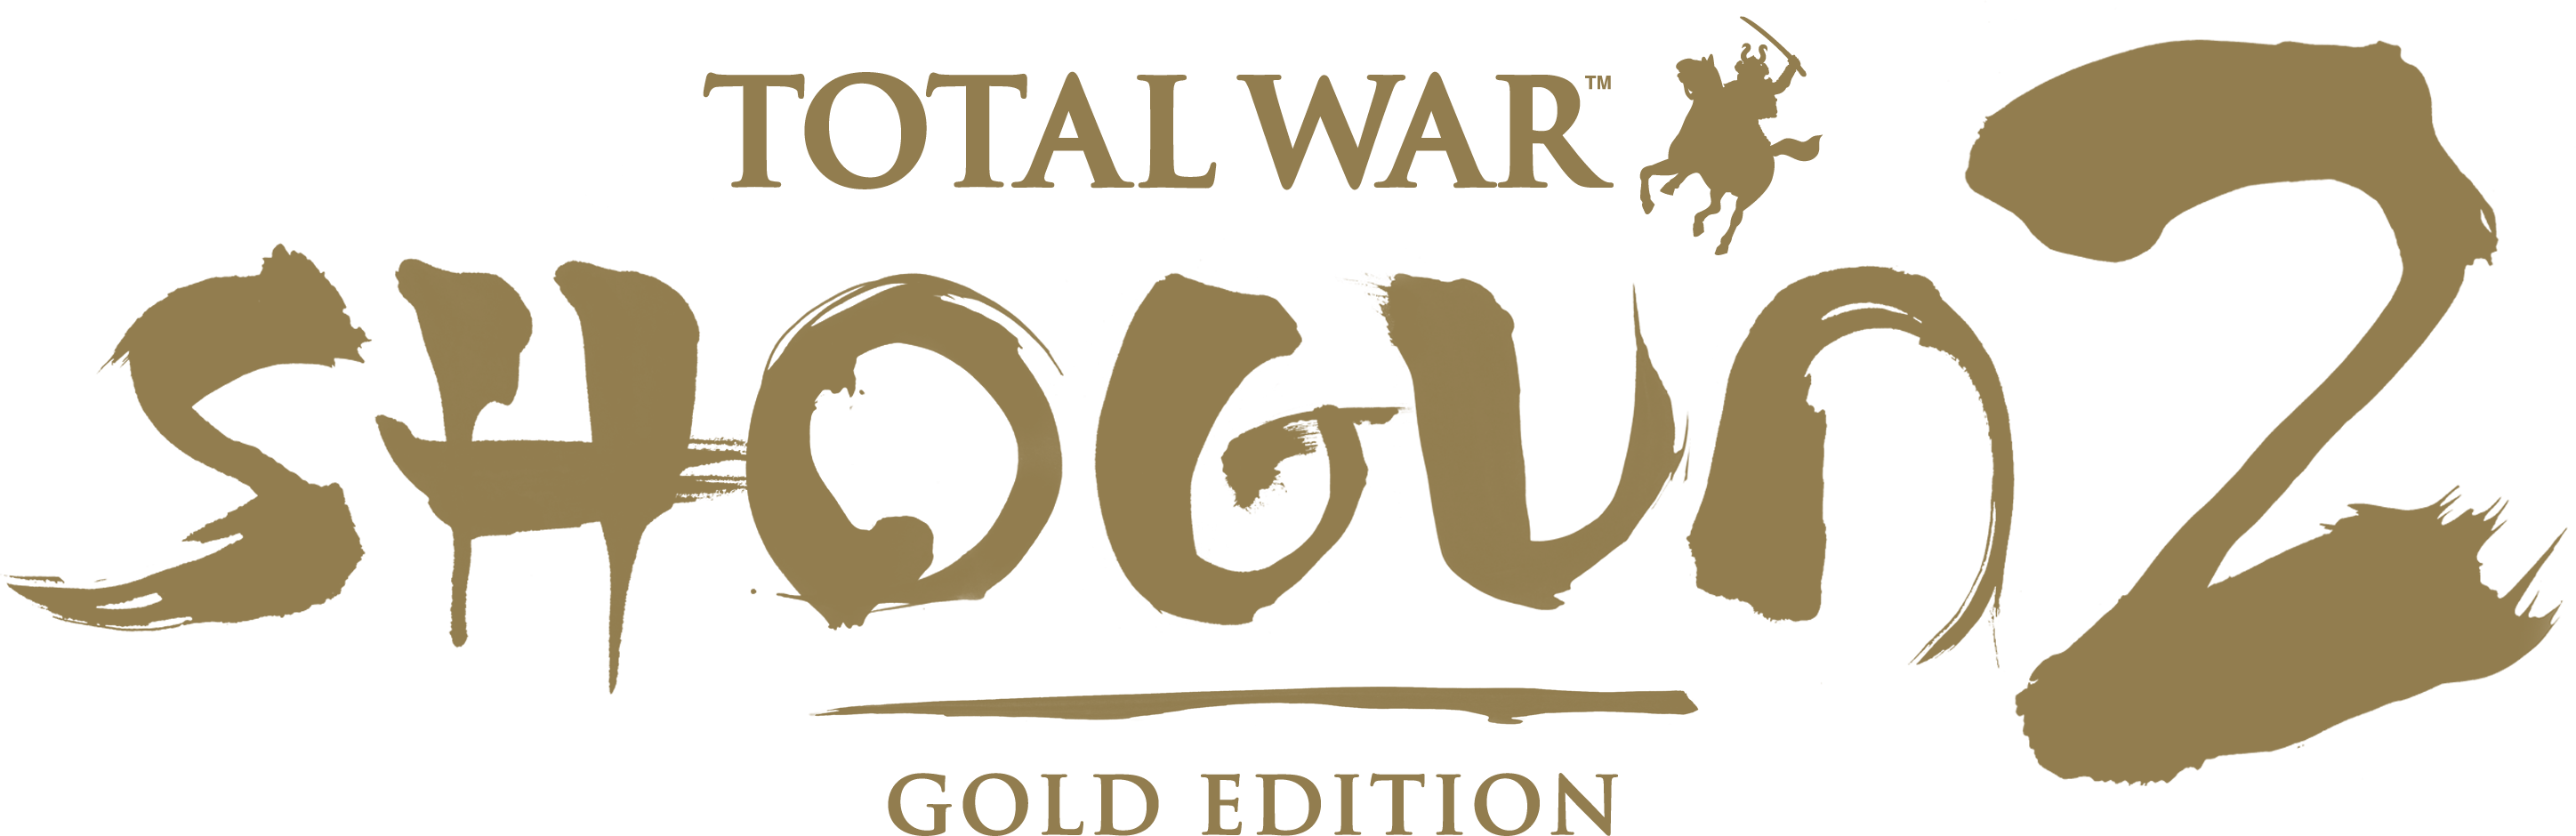 Shogun 2 Features Enhanced Full 3d Battles Via Land - Shogun 2 Total War Logo (2896x940)